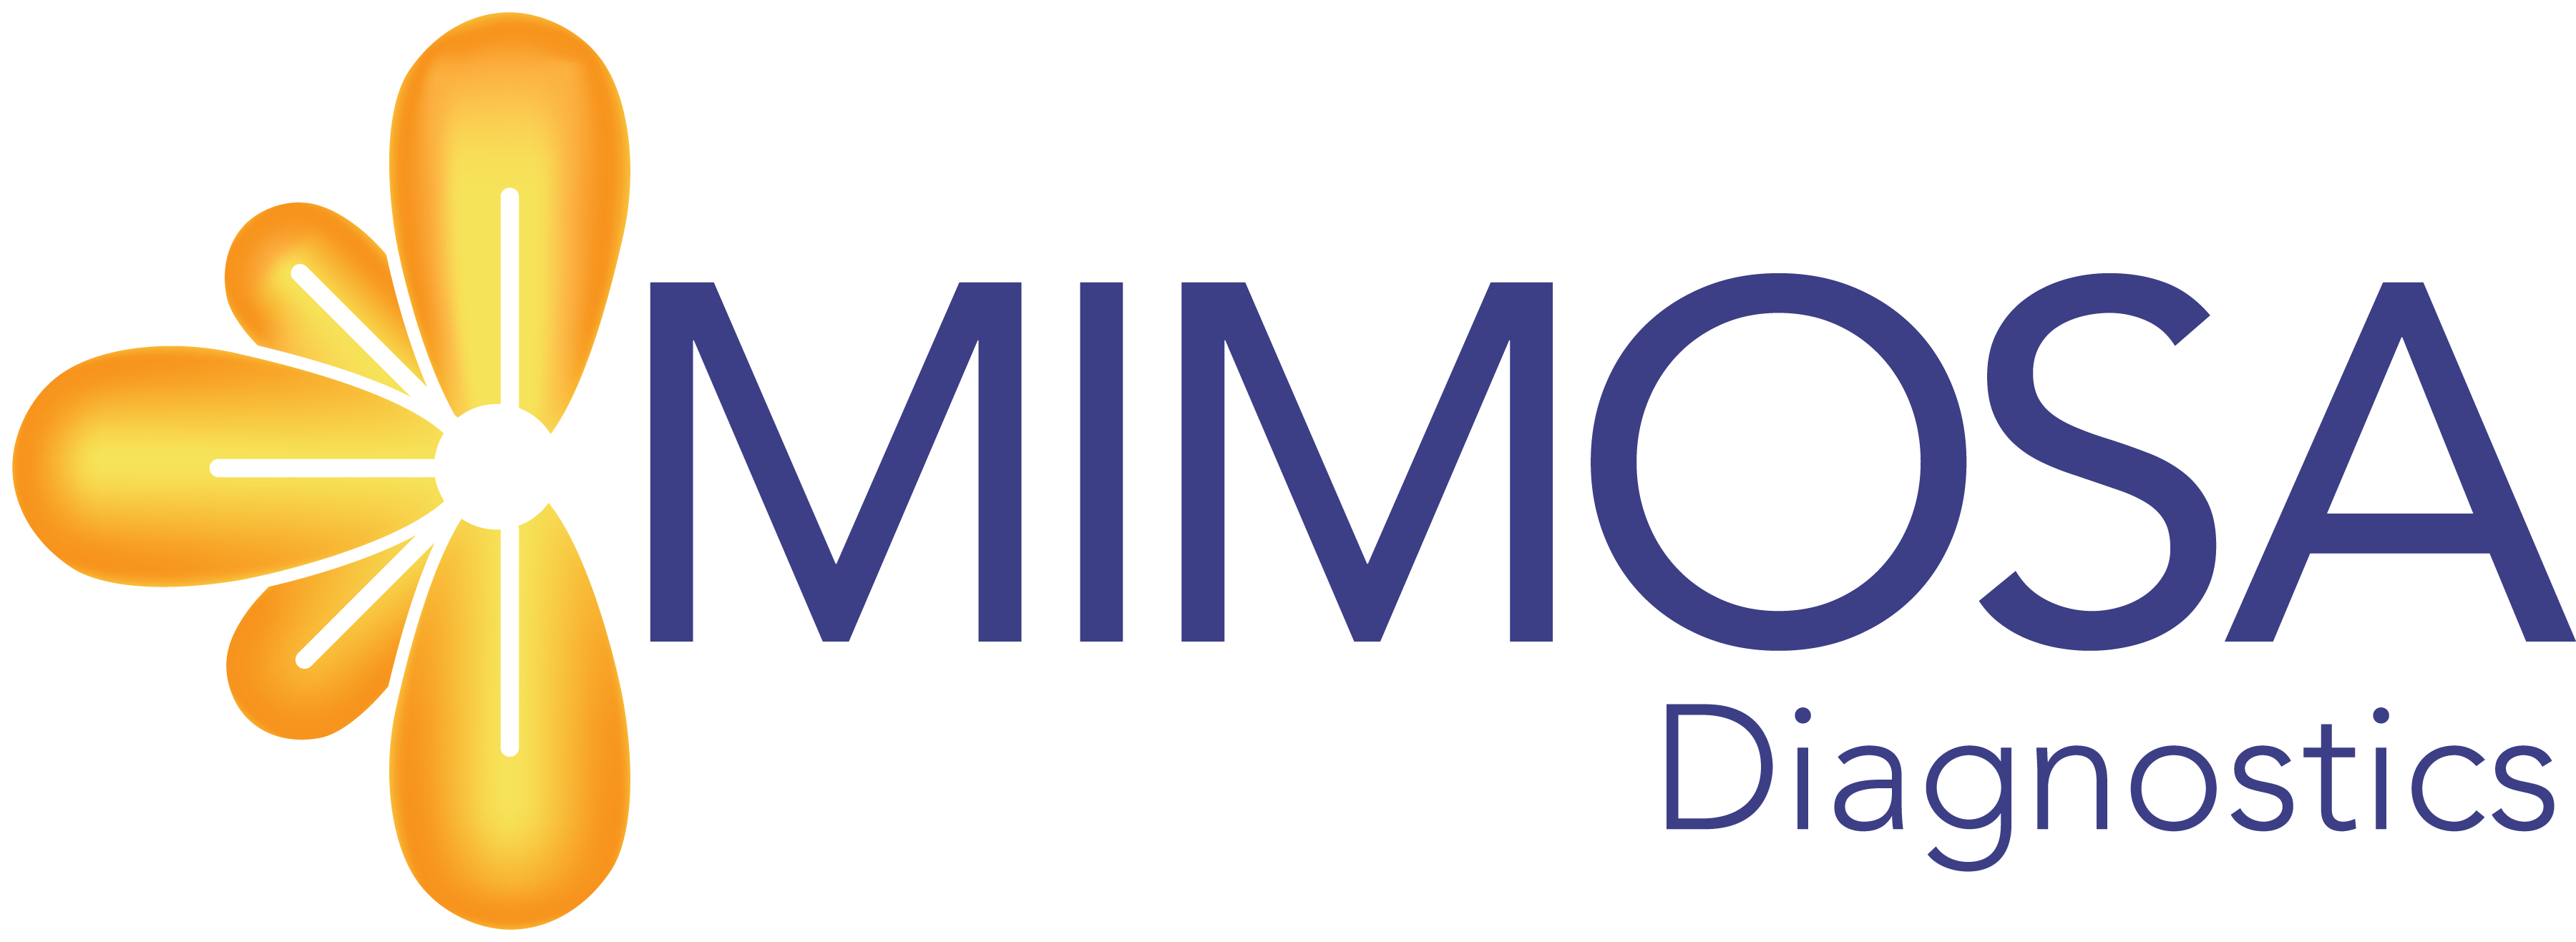 Copy of MIMOSA Diagnostics logo FINAL